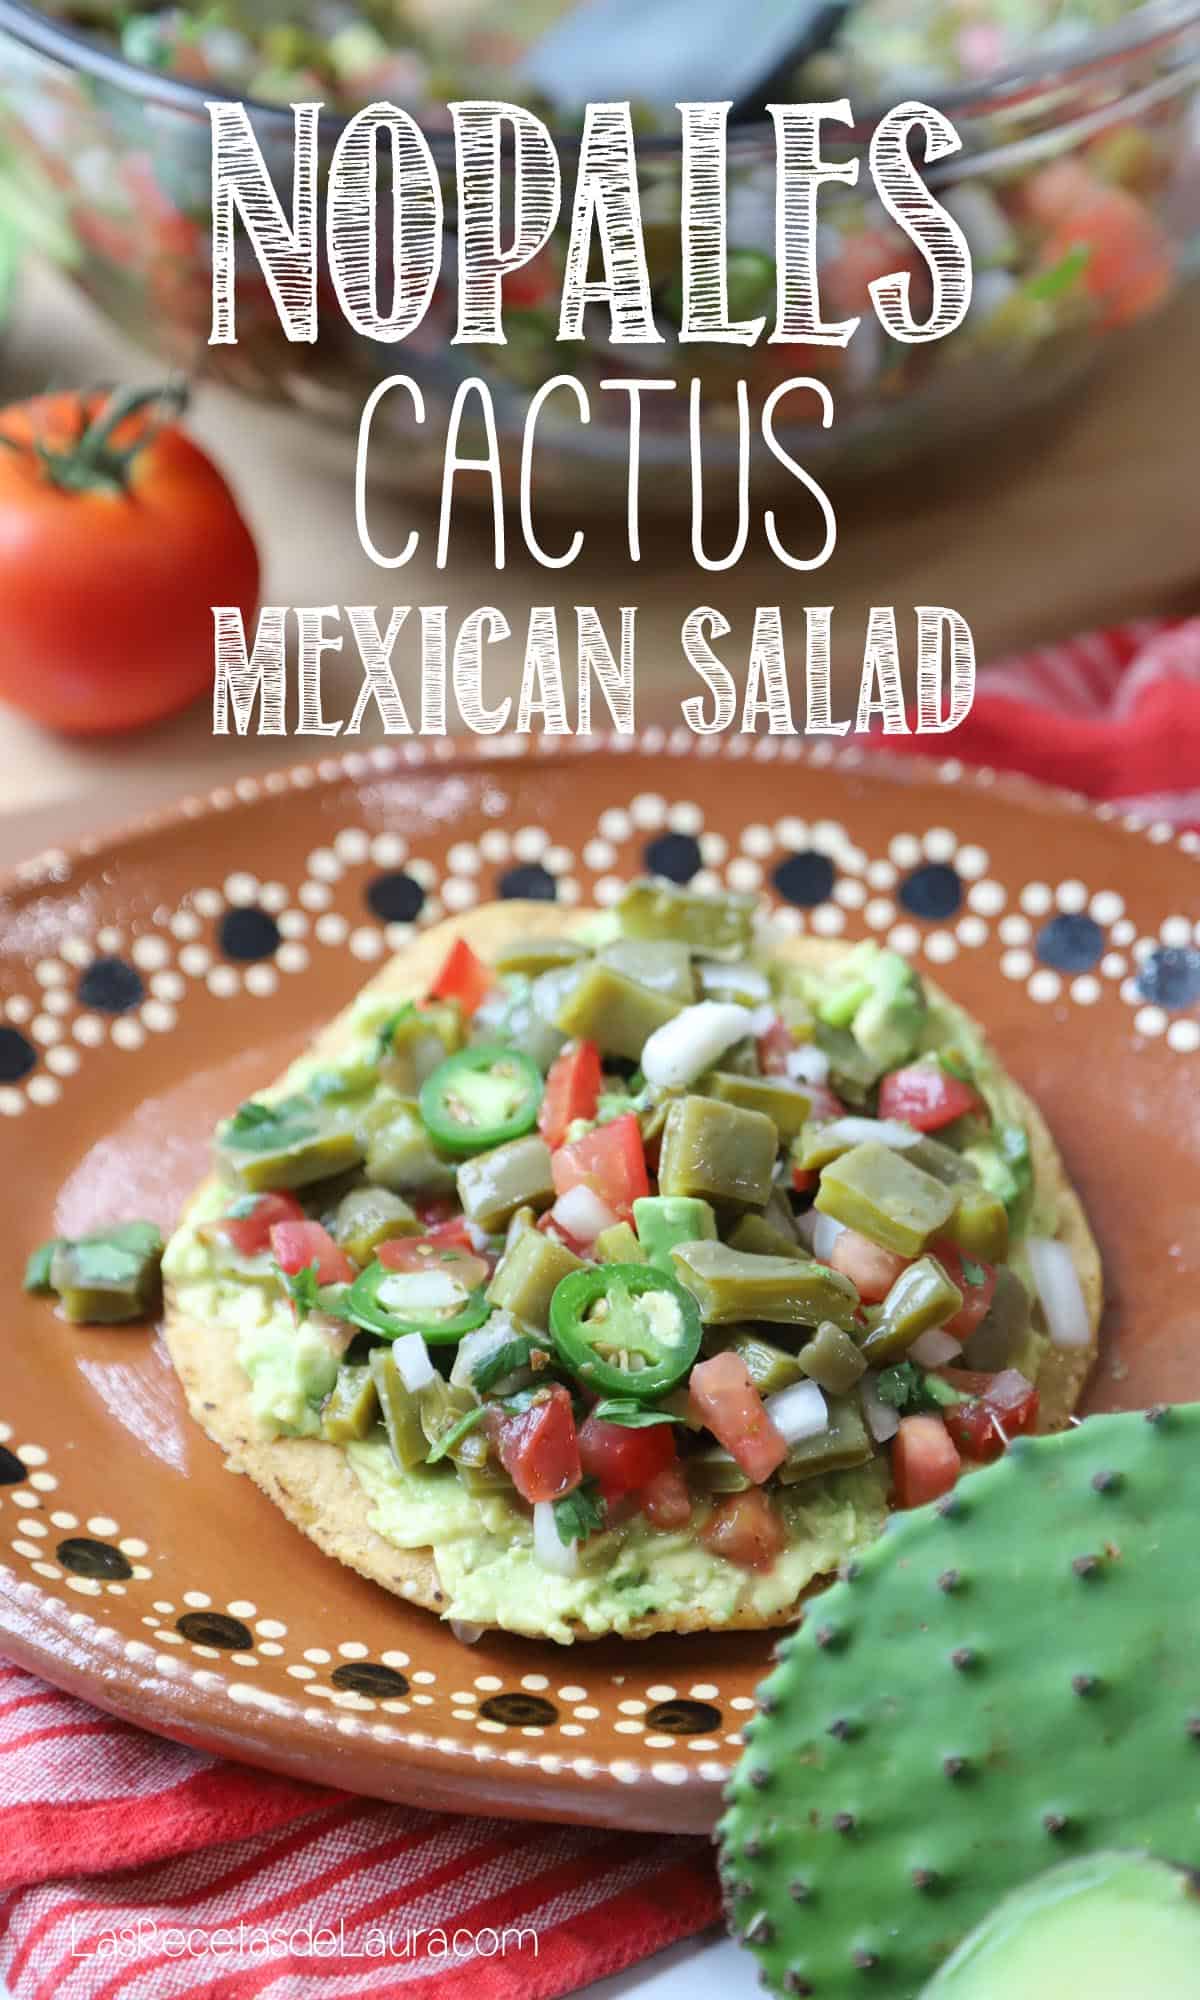 Recipes for Nopalitos - Nopales cactus mexican salad